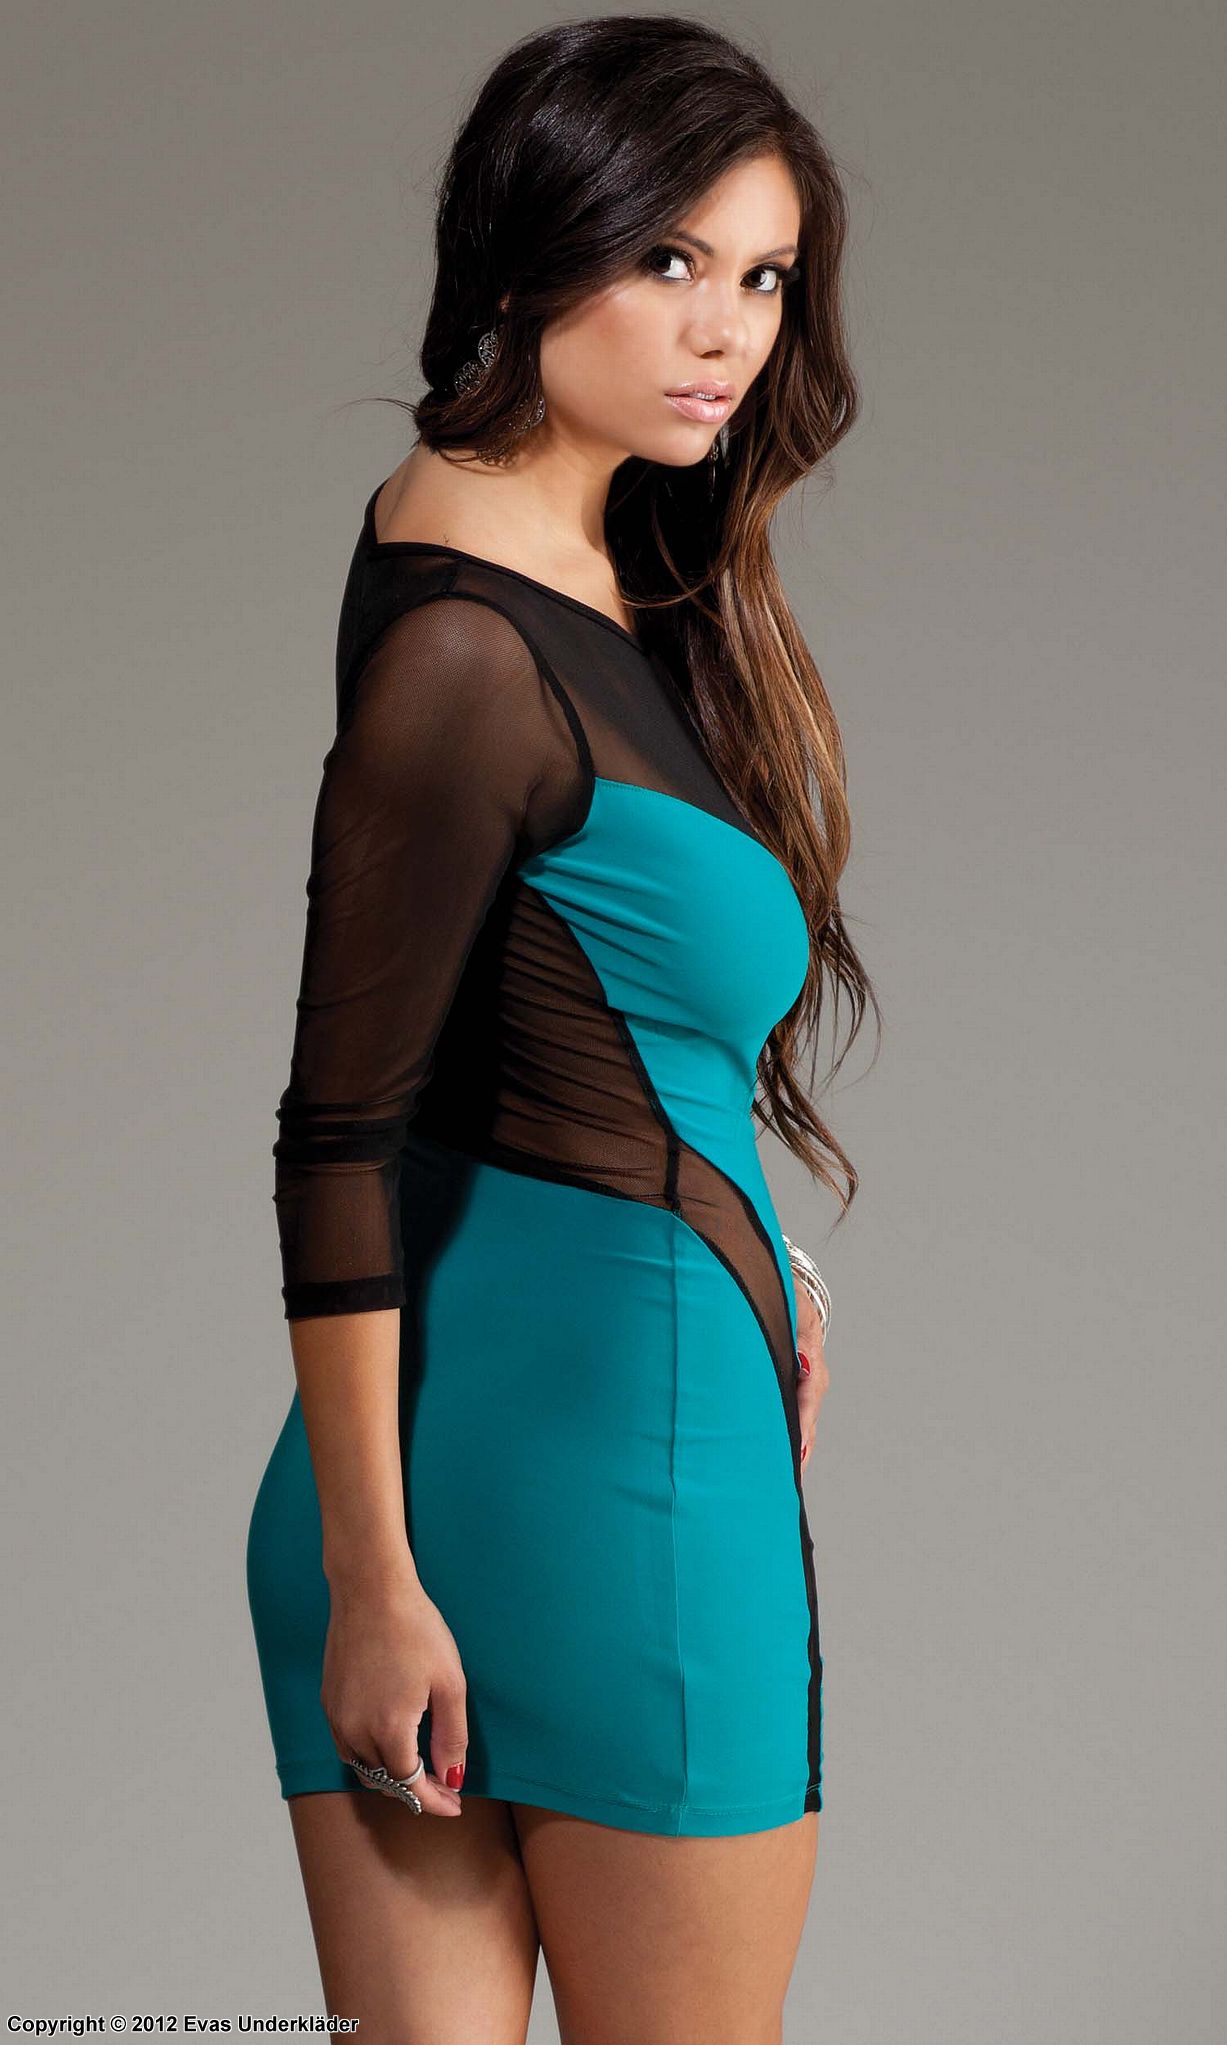 Trendig klänning i två material, turkos